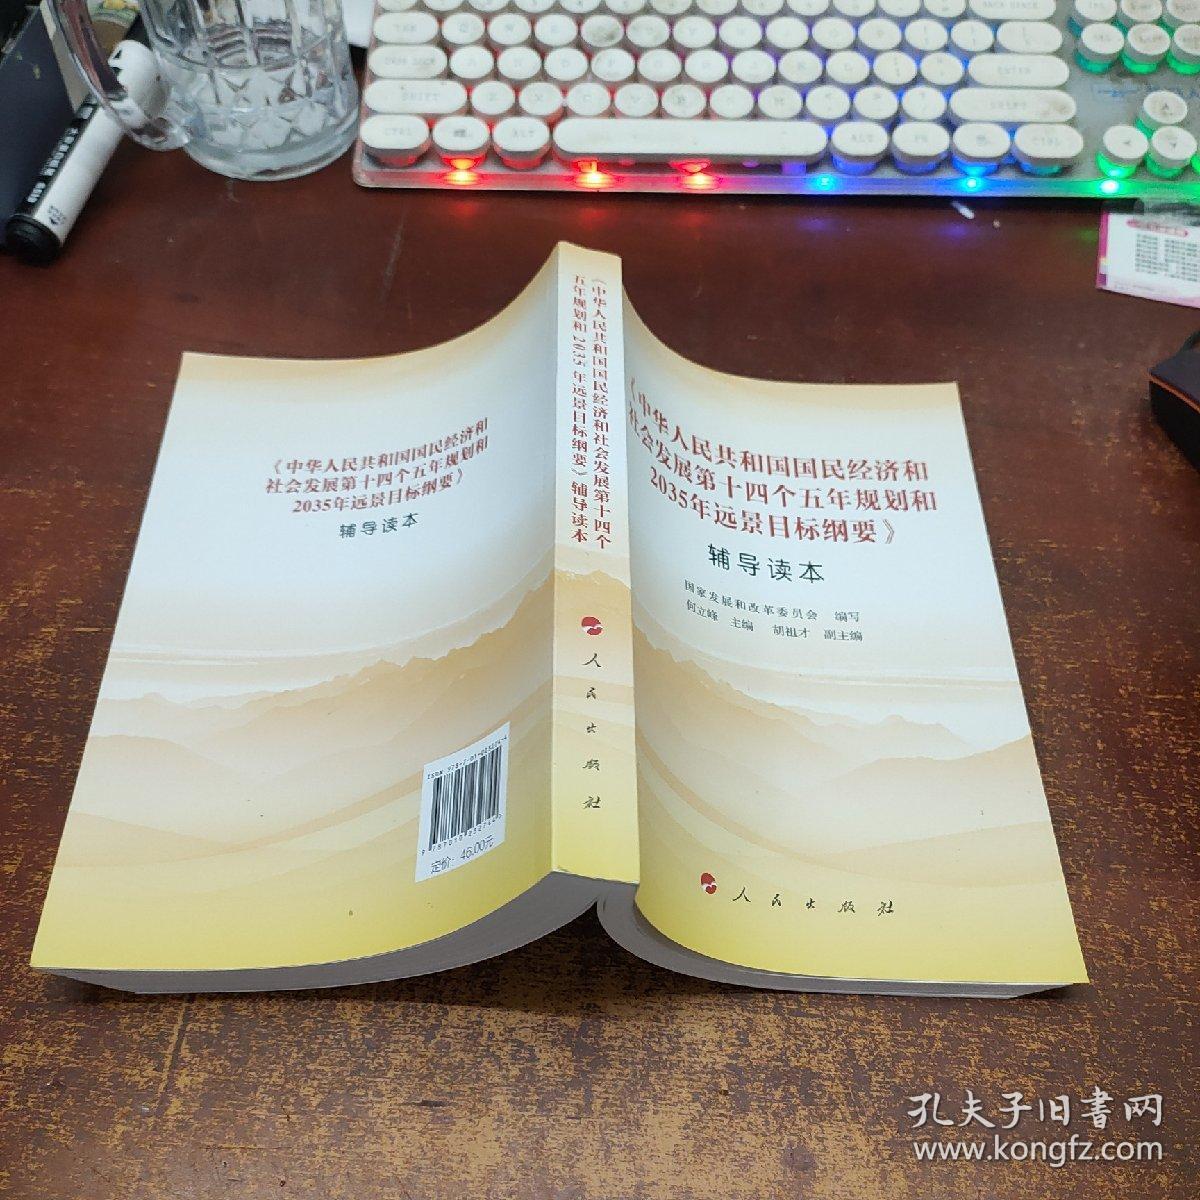 《中华人民共和国国民经济和社会发展第十四个五年规划和2035年远景目标纲要》辅导读本